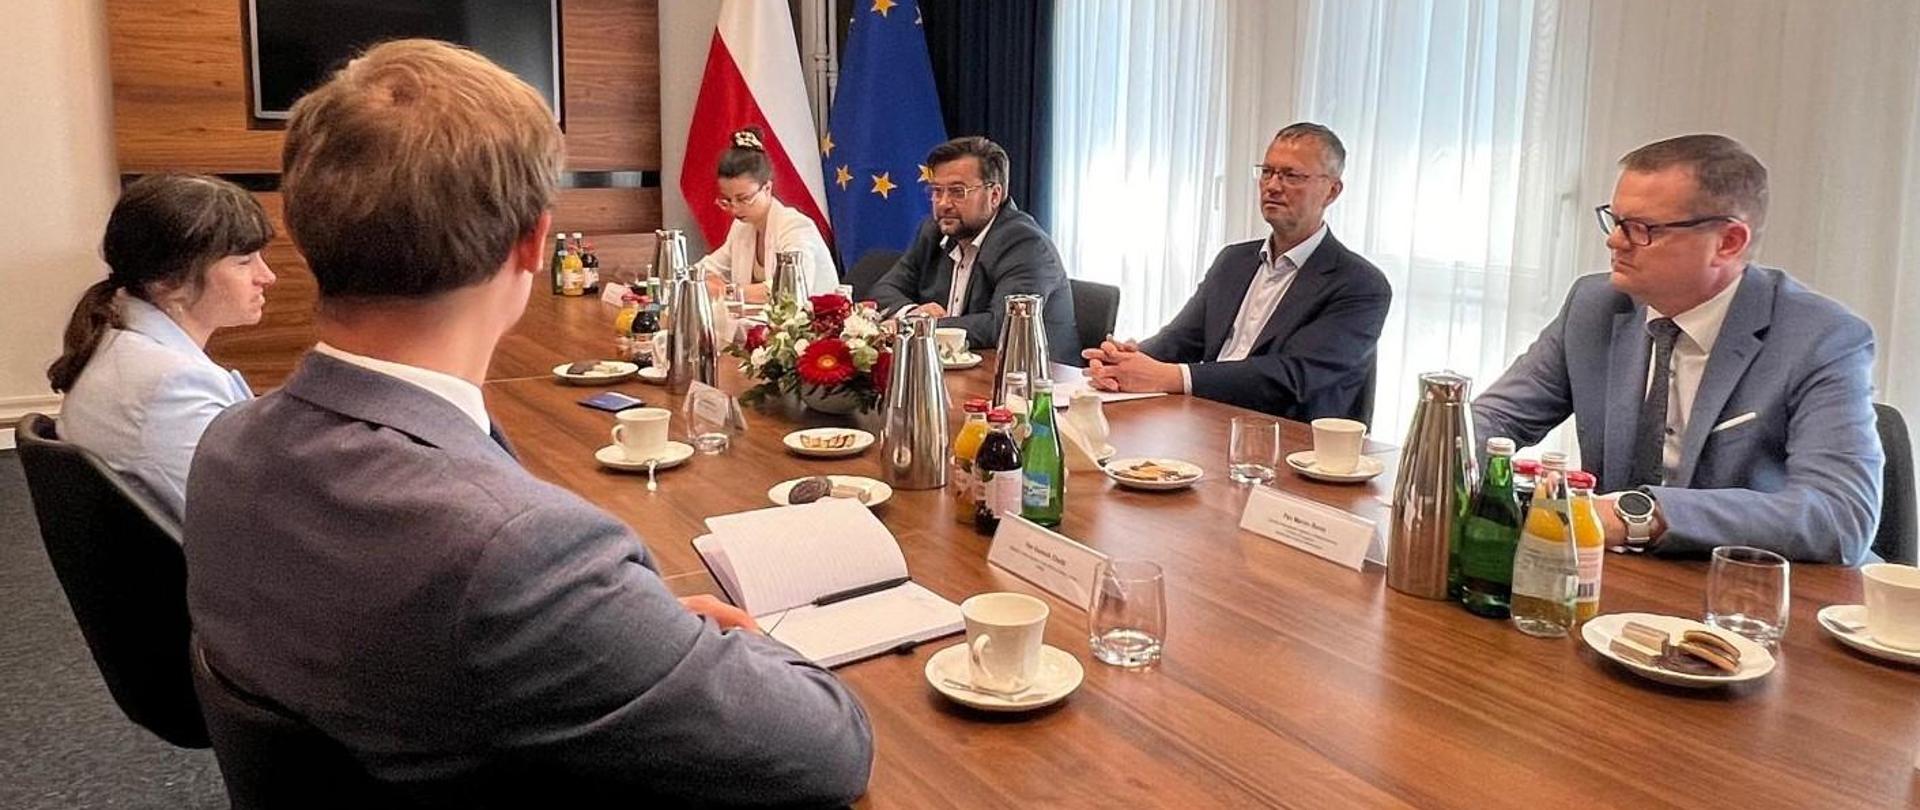 Z lewej strony stołu siedzą przedstawiciele Boeinga, z prawej strony delegacja MAP. Na stole stoją dzbanki, butelki, filiżanki i kwiaty. W tle ekran i flagi - polska i unijna. 